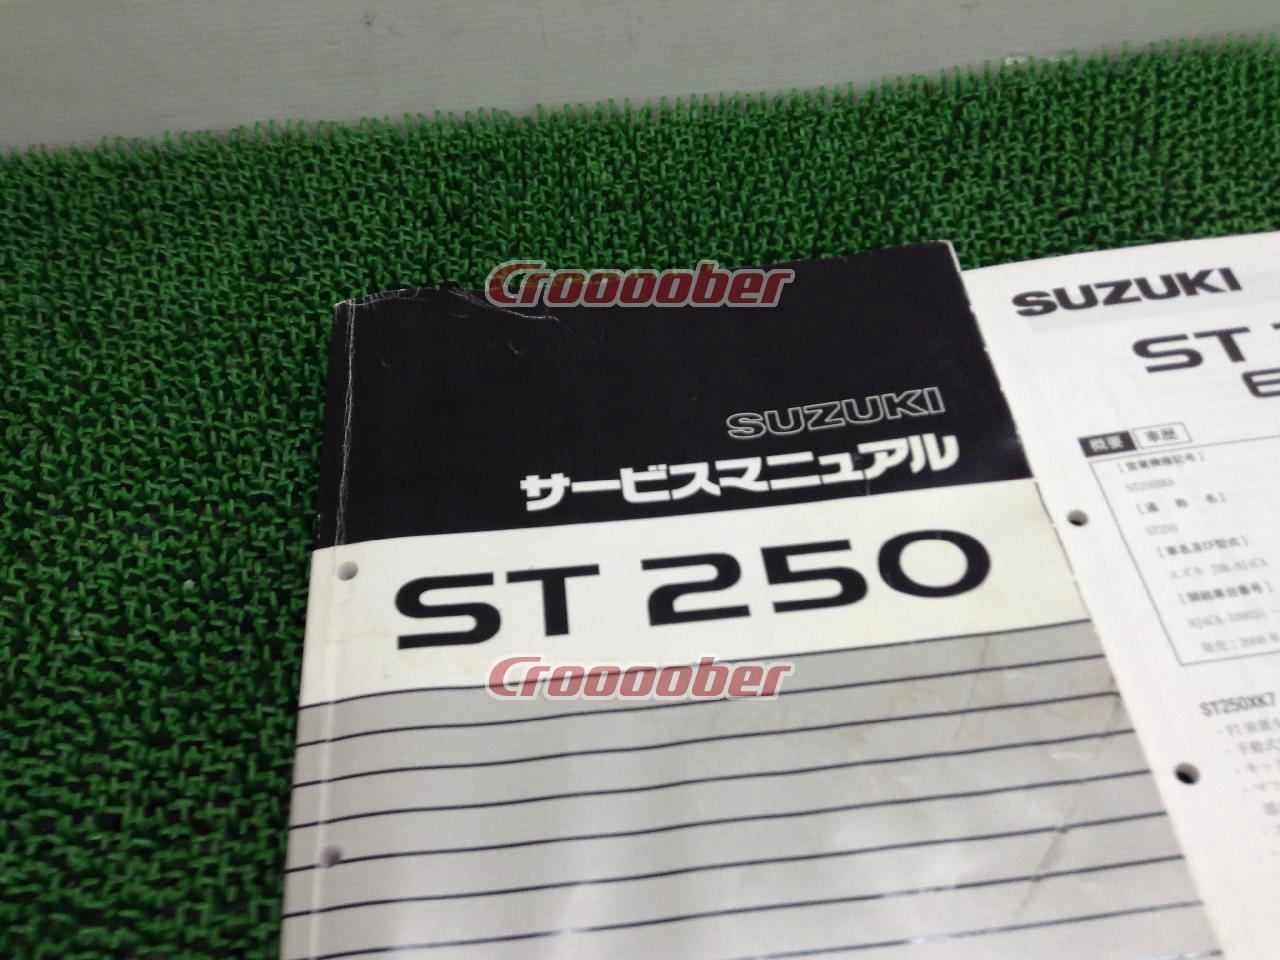 SUZUKI(スズキ) サービスマニュアル ST250 | その他(バイク用品 